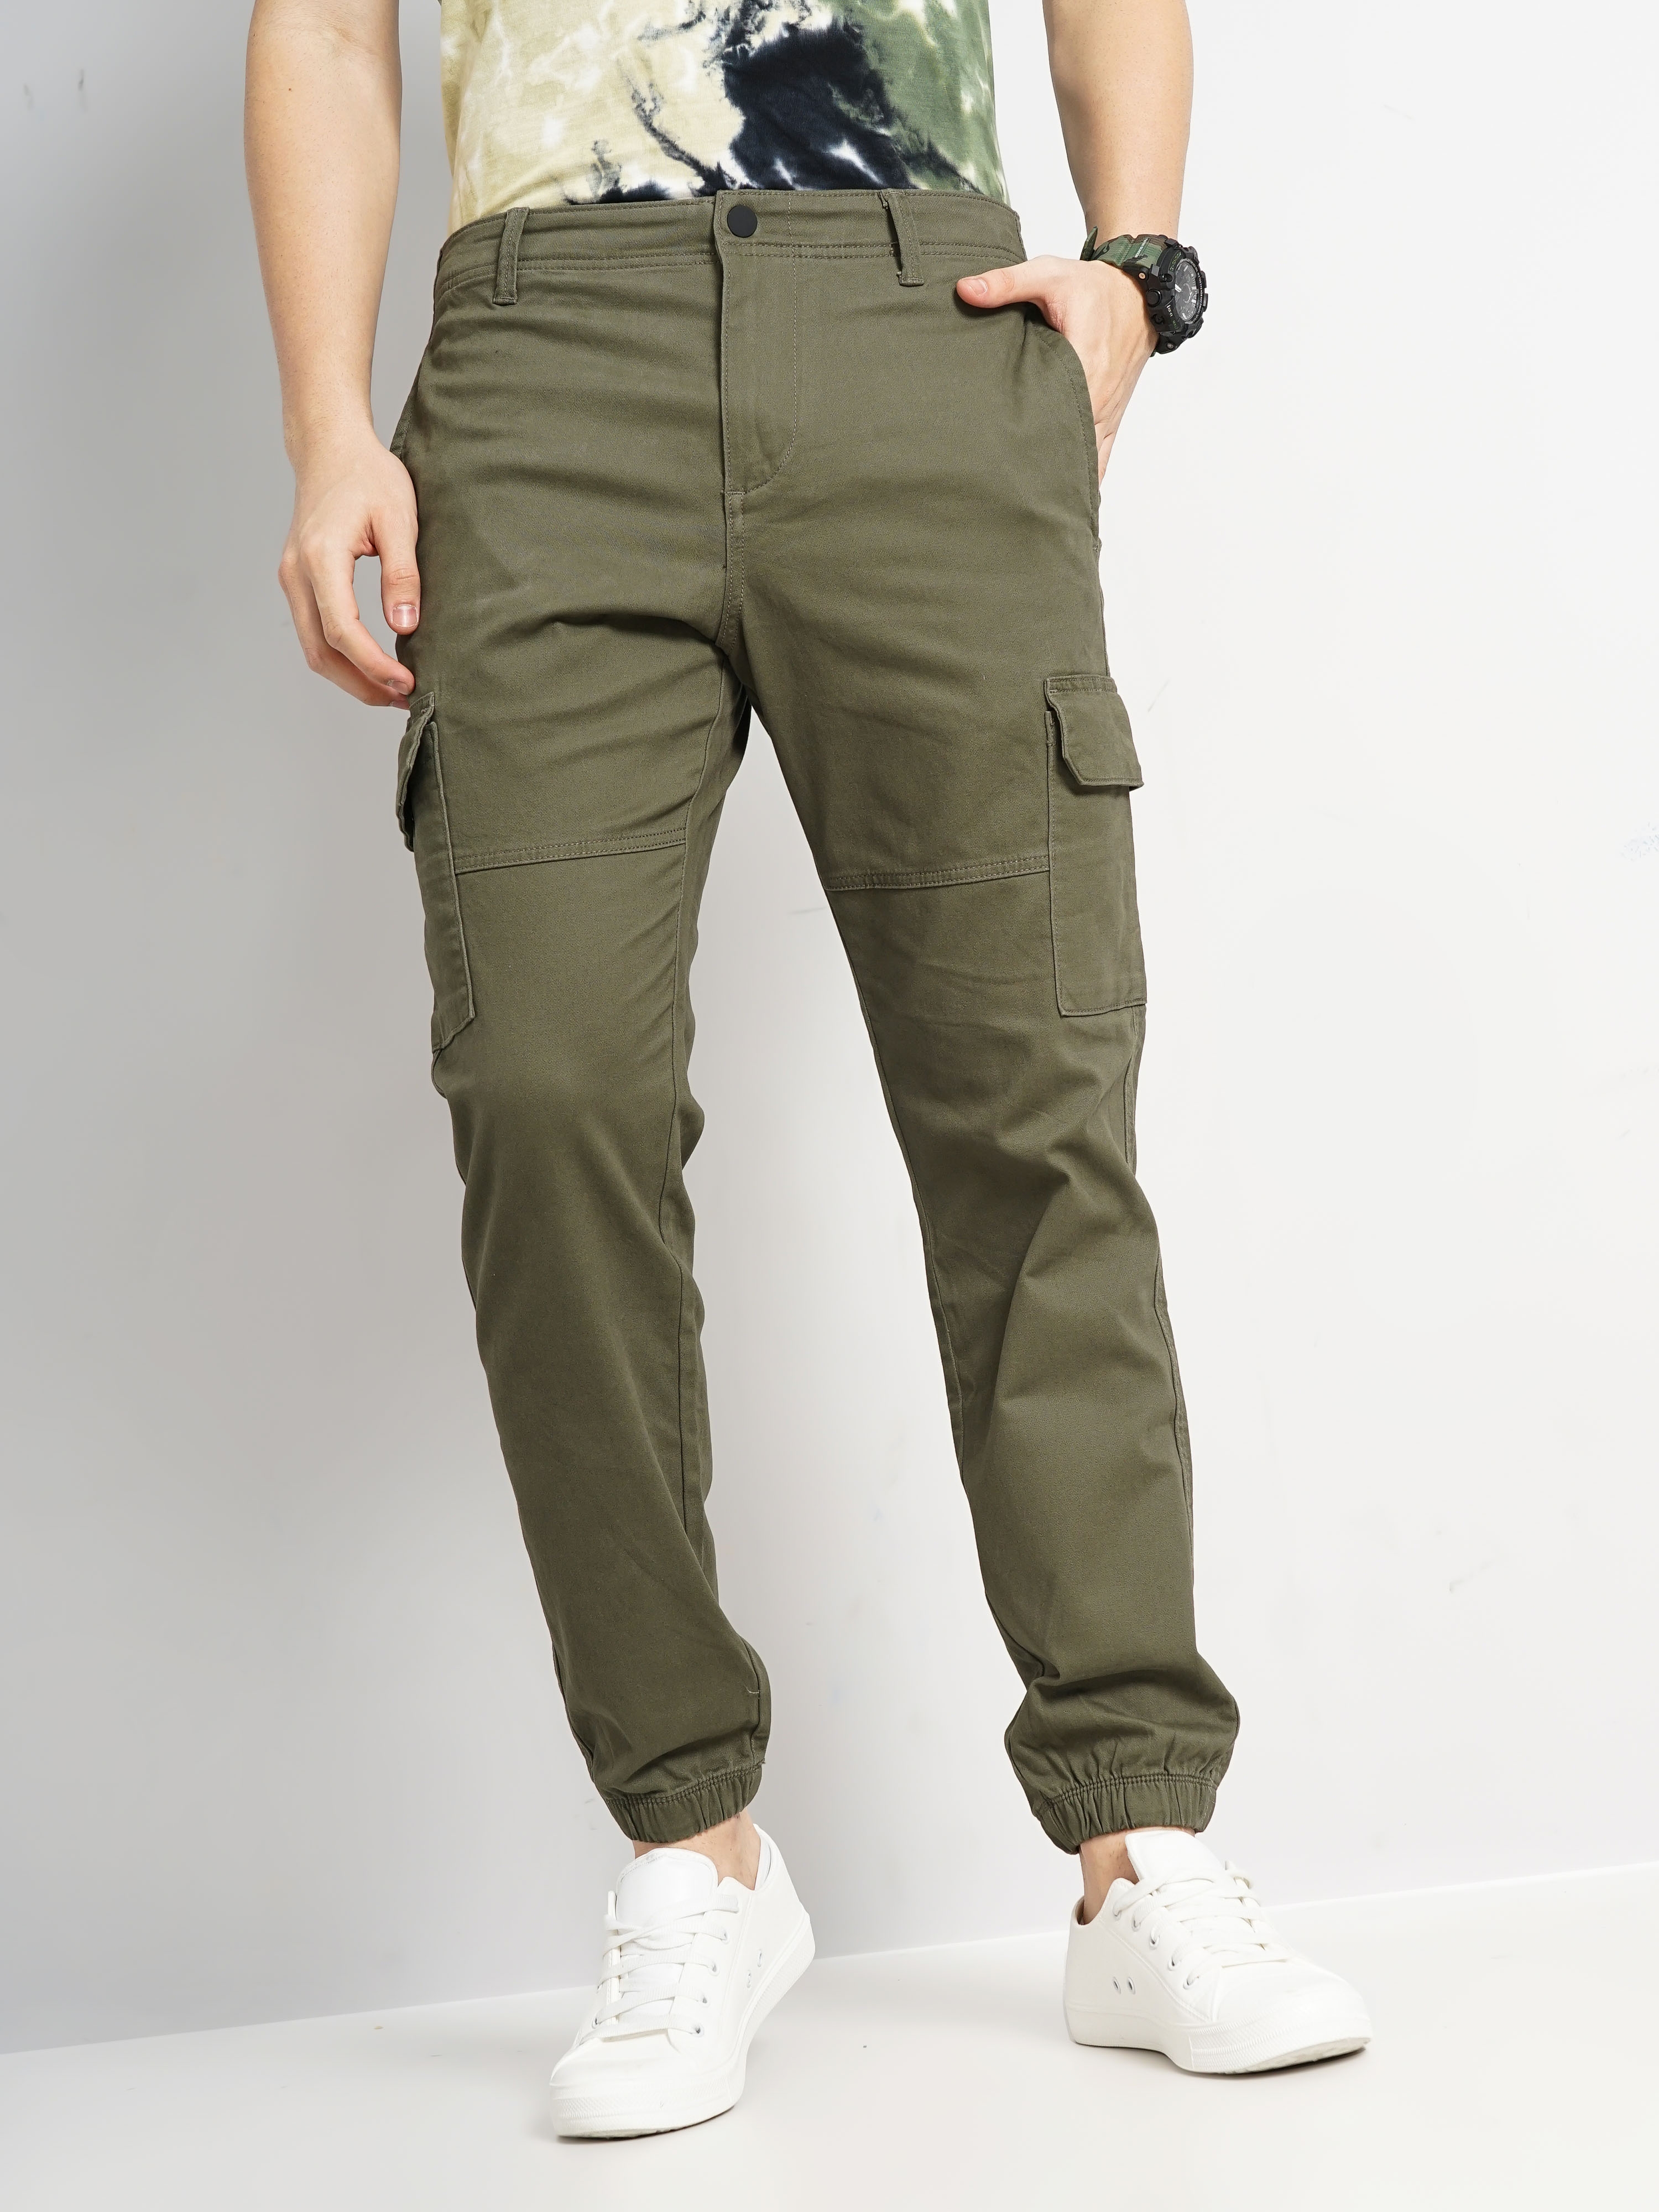 Buy CELIO Solid Trousers Beige (34) Online